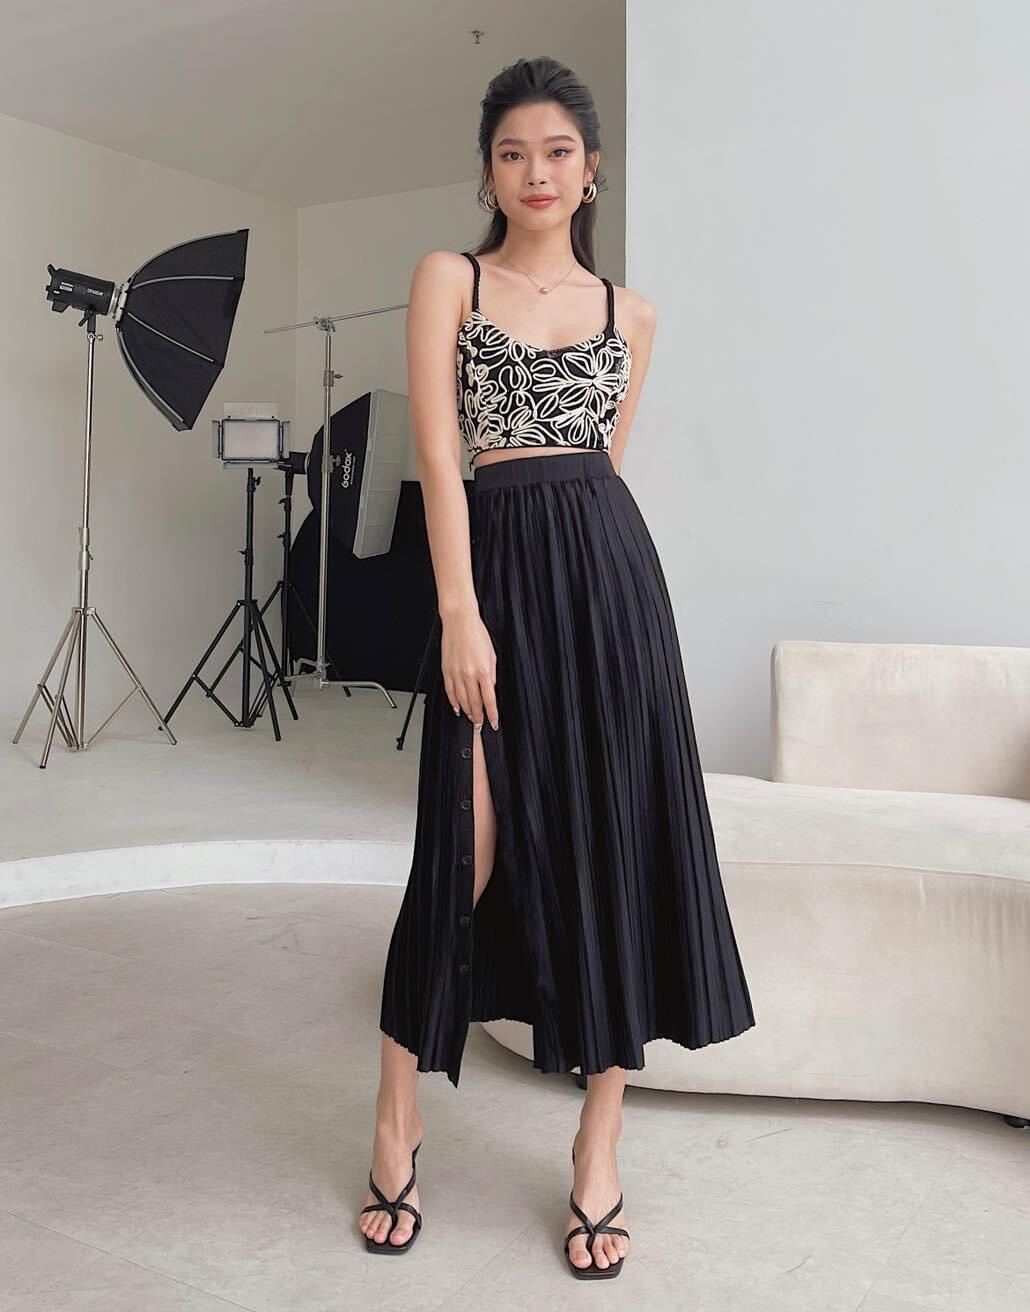 rẻ vô địch] chân váy xẻ tà kiểu dáng dài 70cm | Shopee Việt Nam